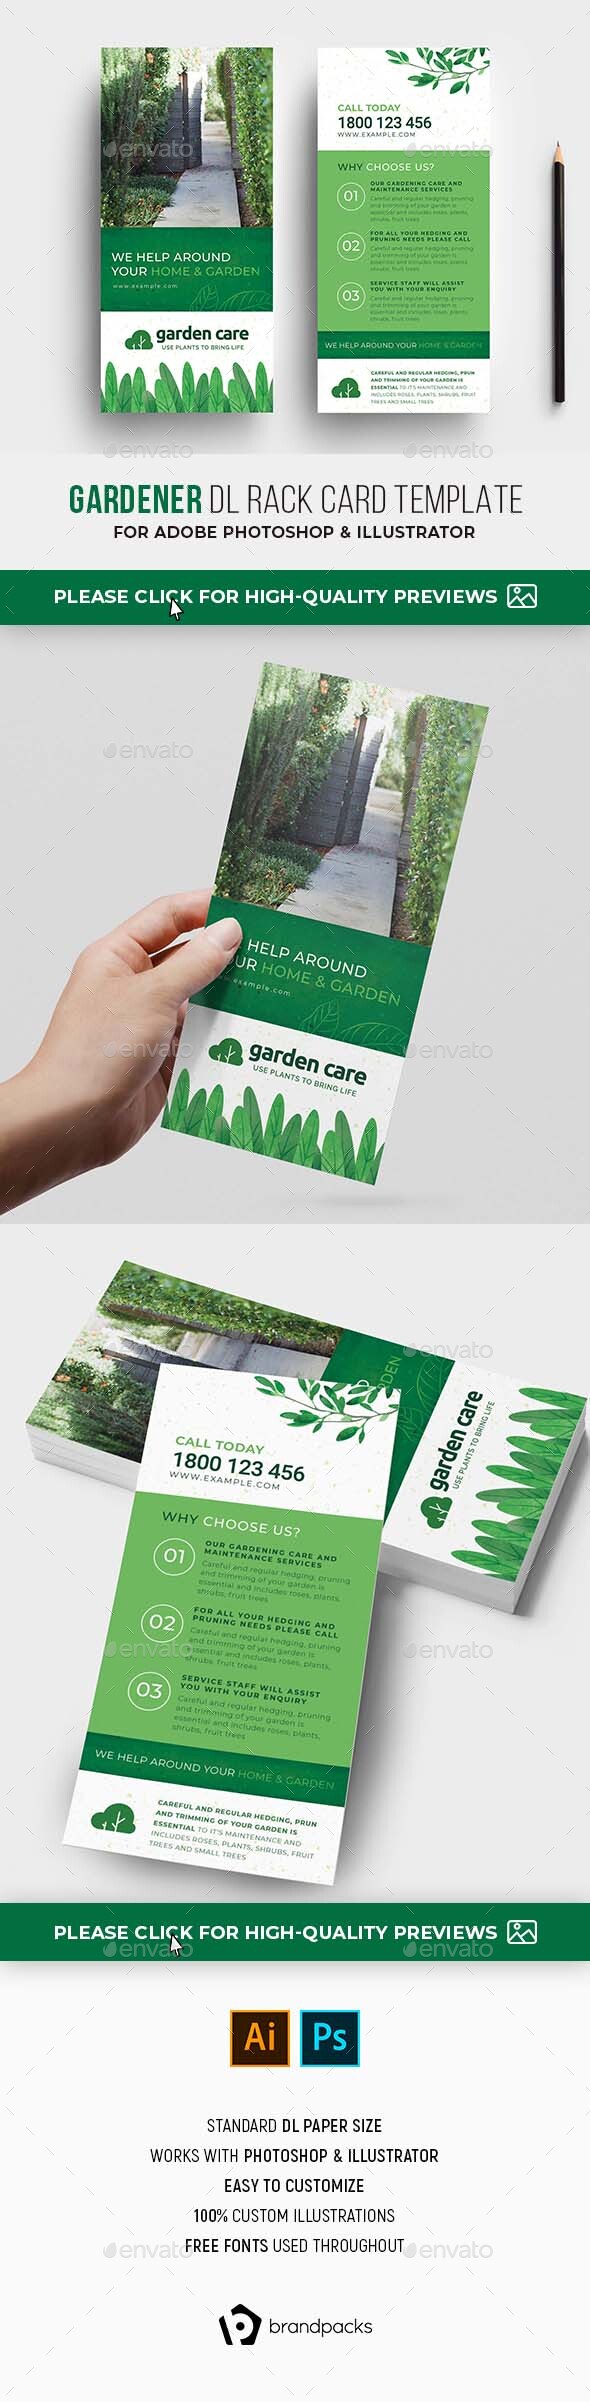 Gardener DL Rack Card